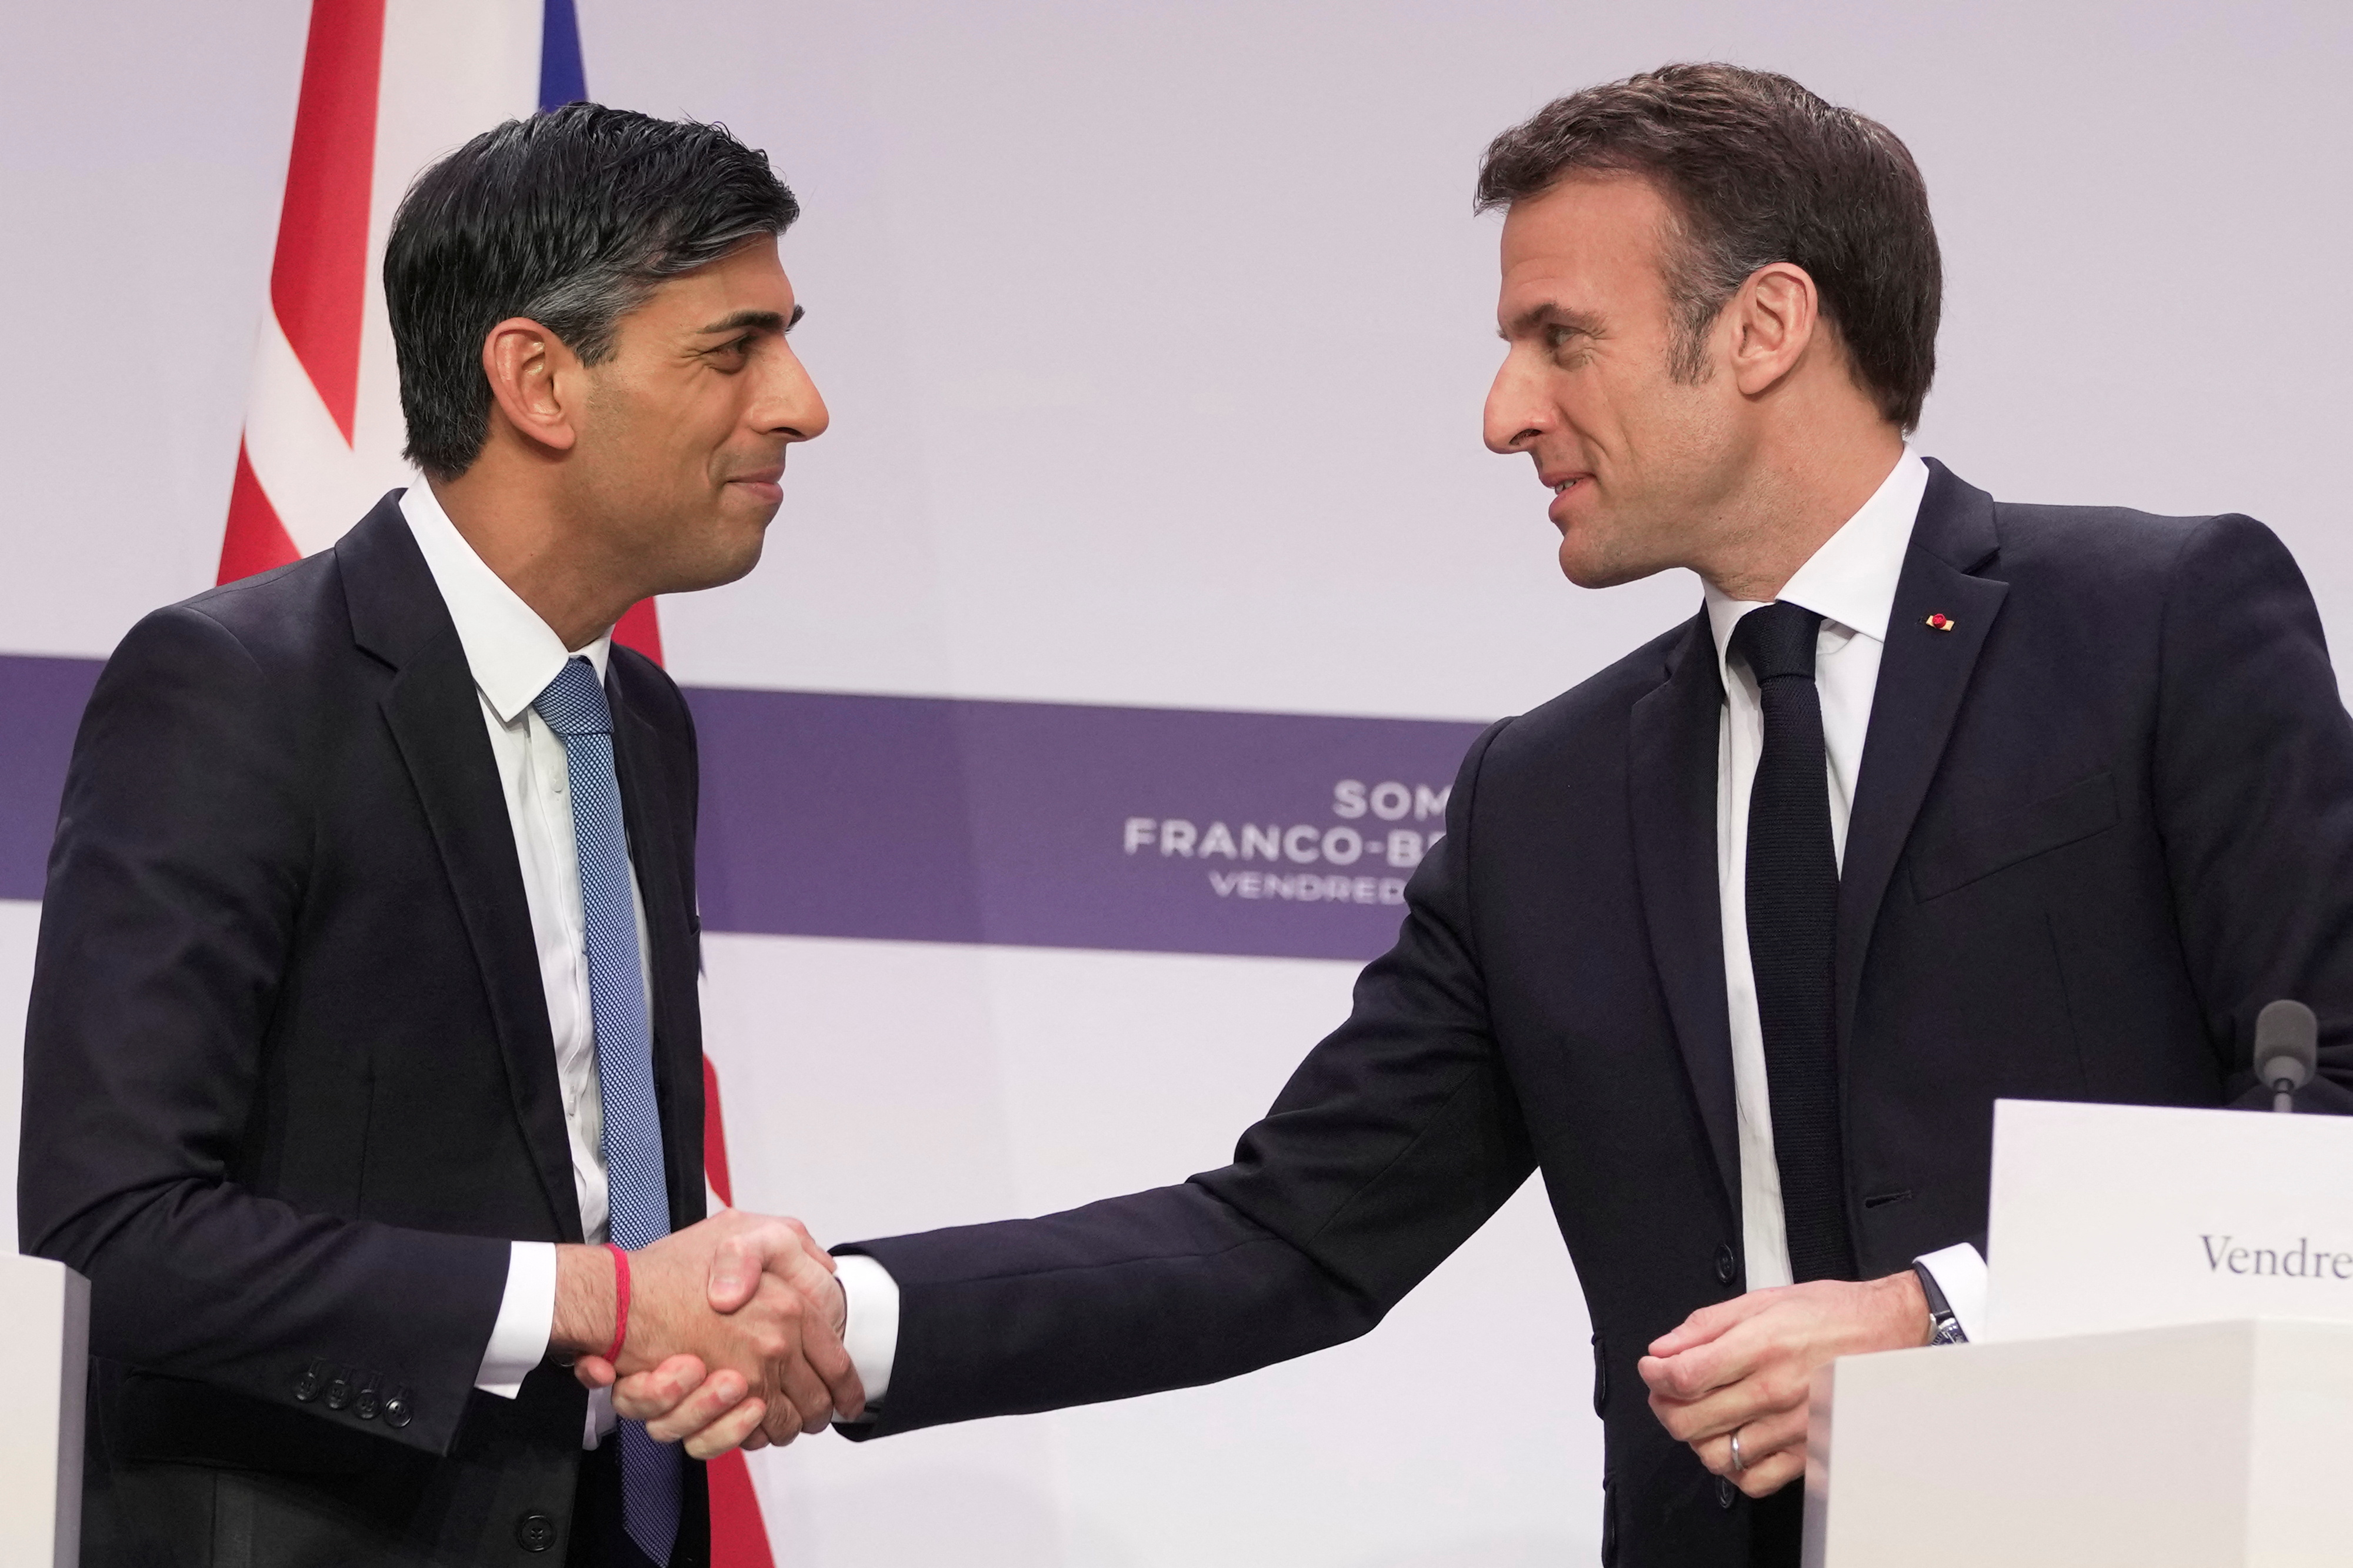 El presidente francés Emmanuel Macron y el primer ministro británico Rishi Sunak se dan la mano. Kin Cheung/Piscina vía REUTERS